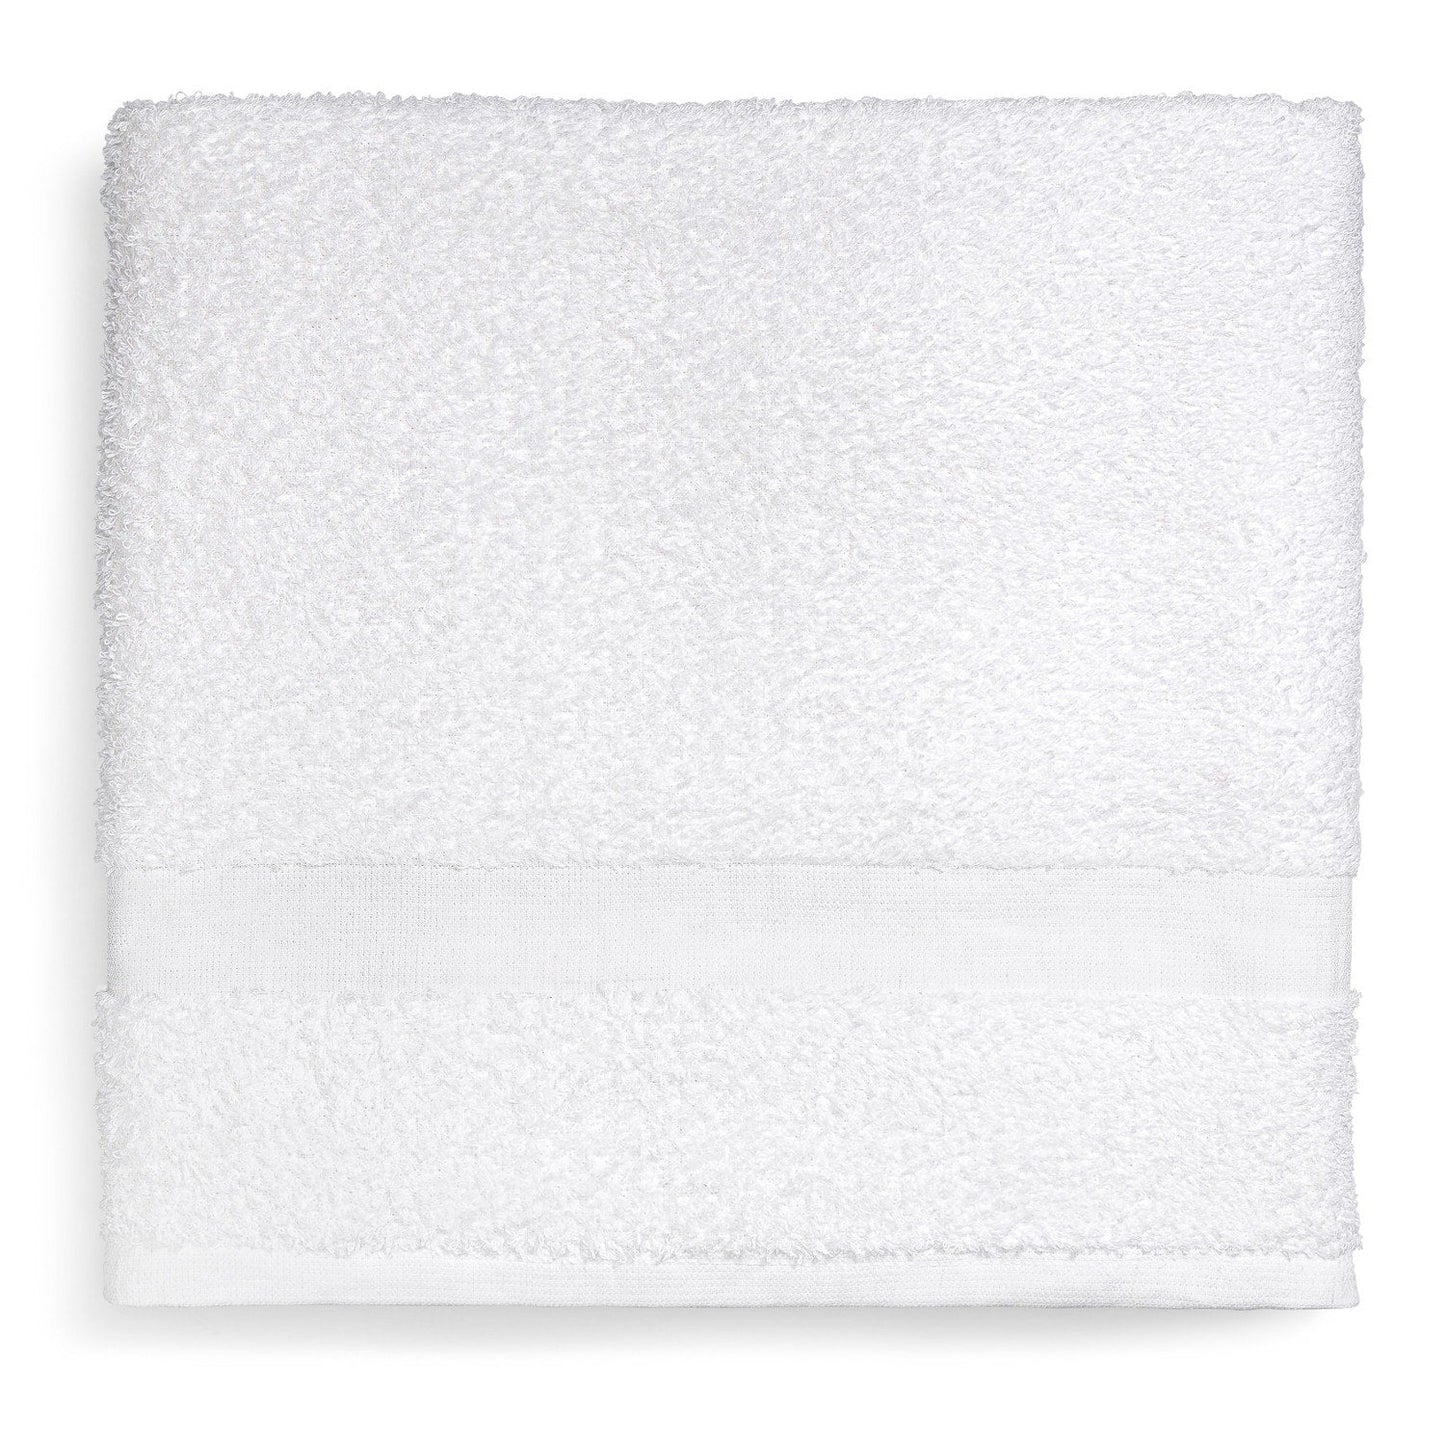 Platinum Bath Towel, 24"x50"-11.5 LBS, 4 DZ/cs